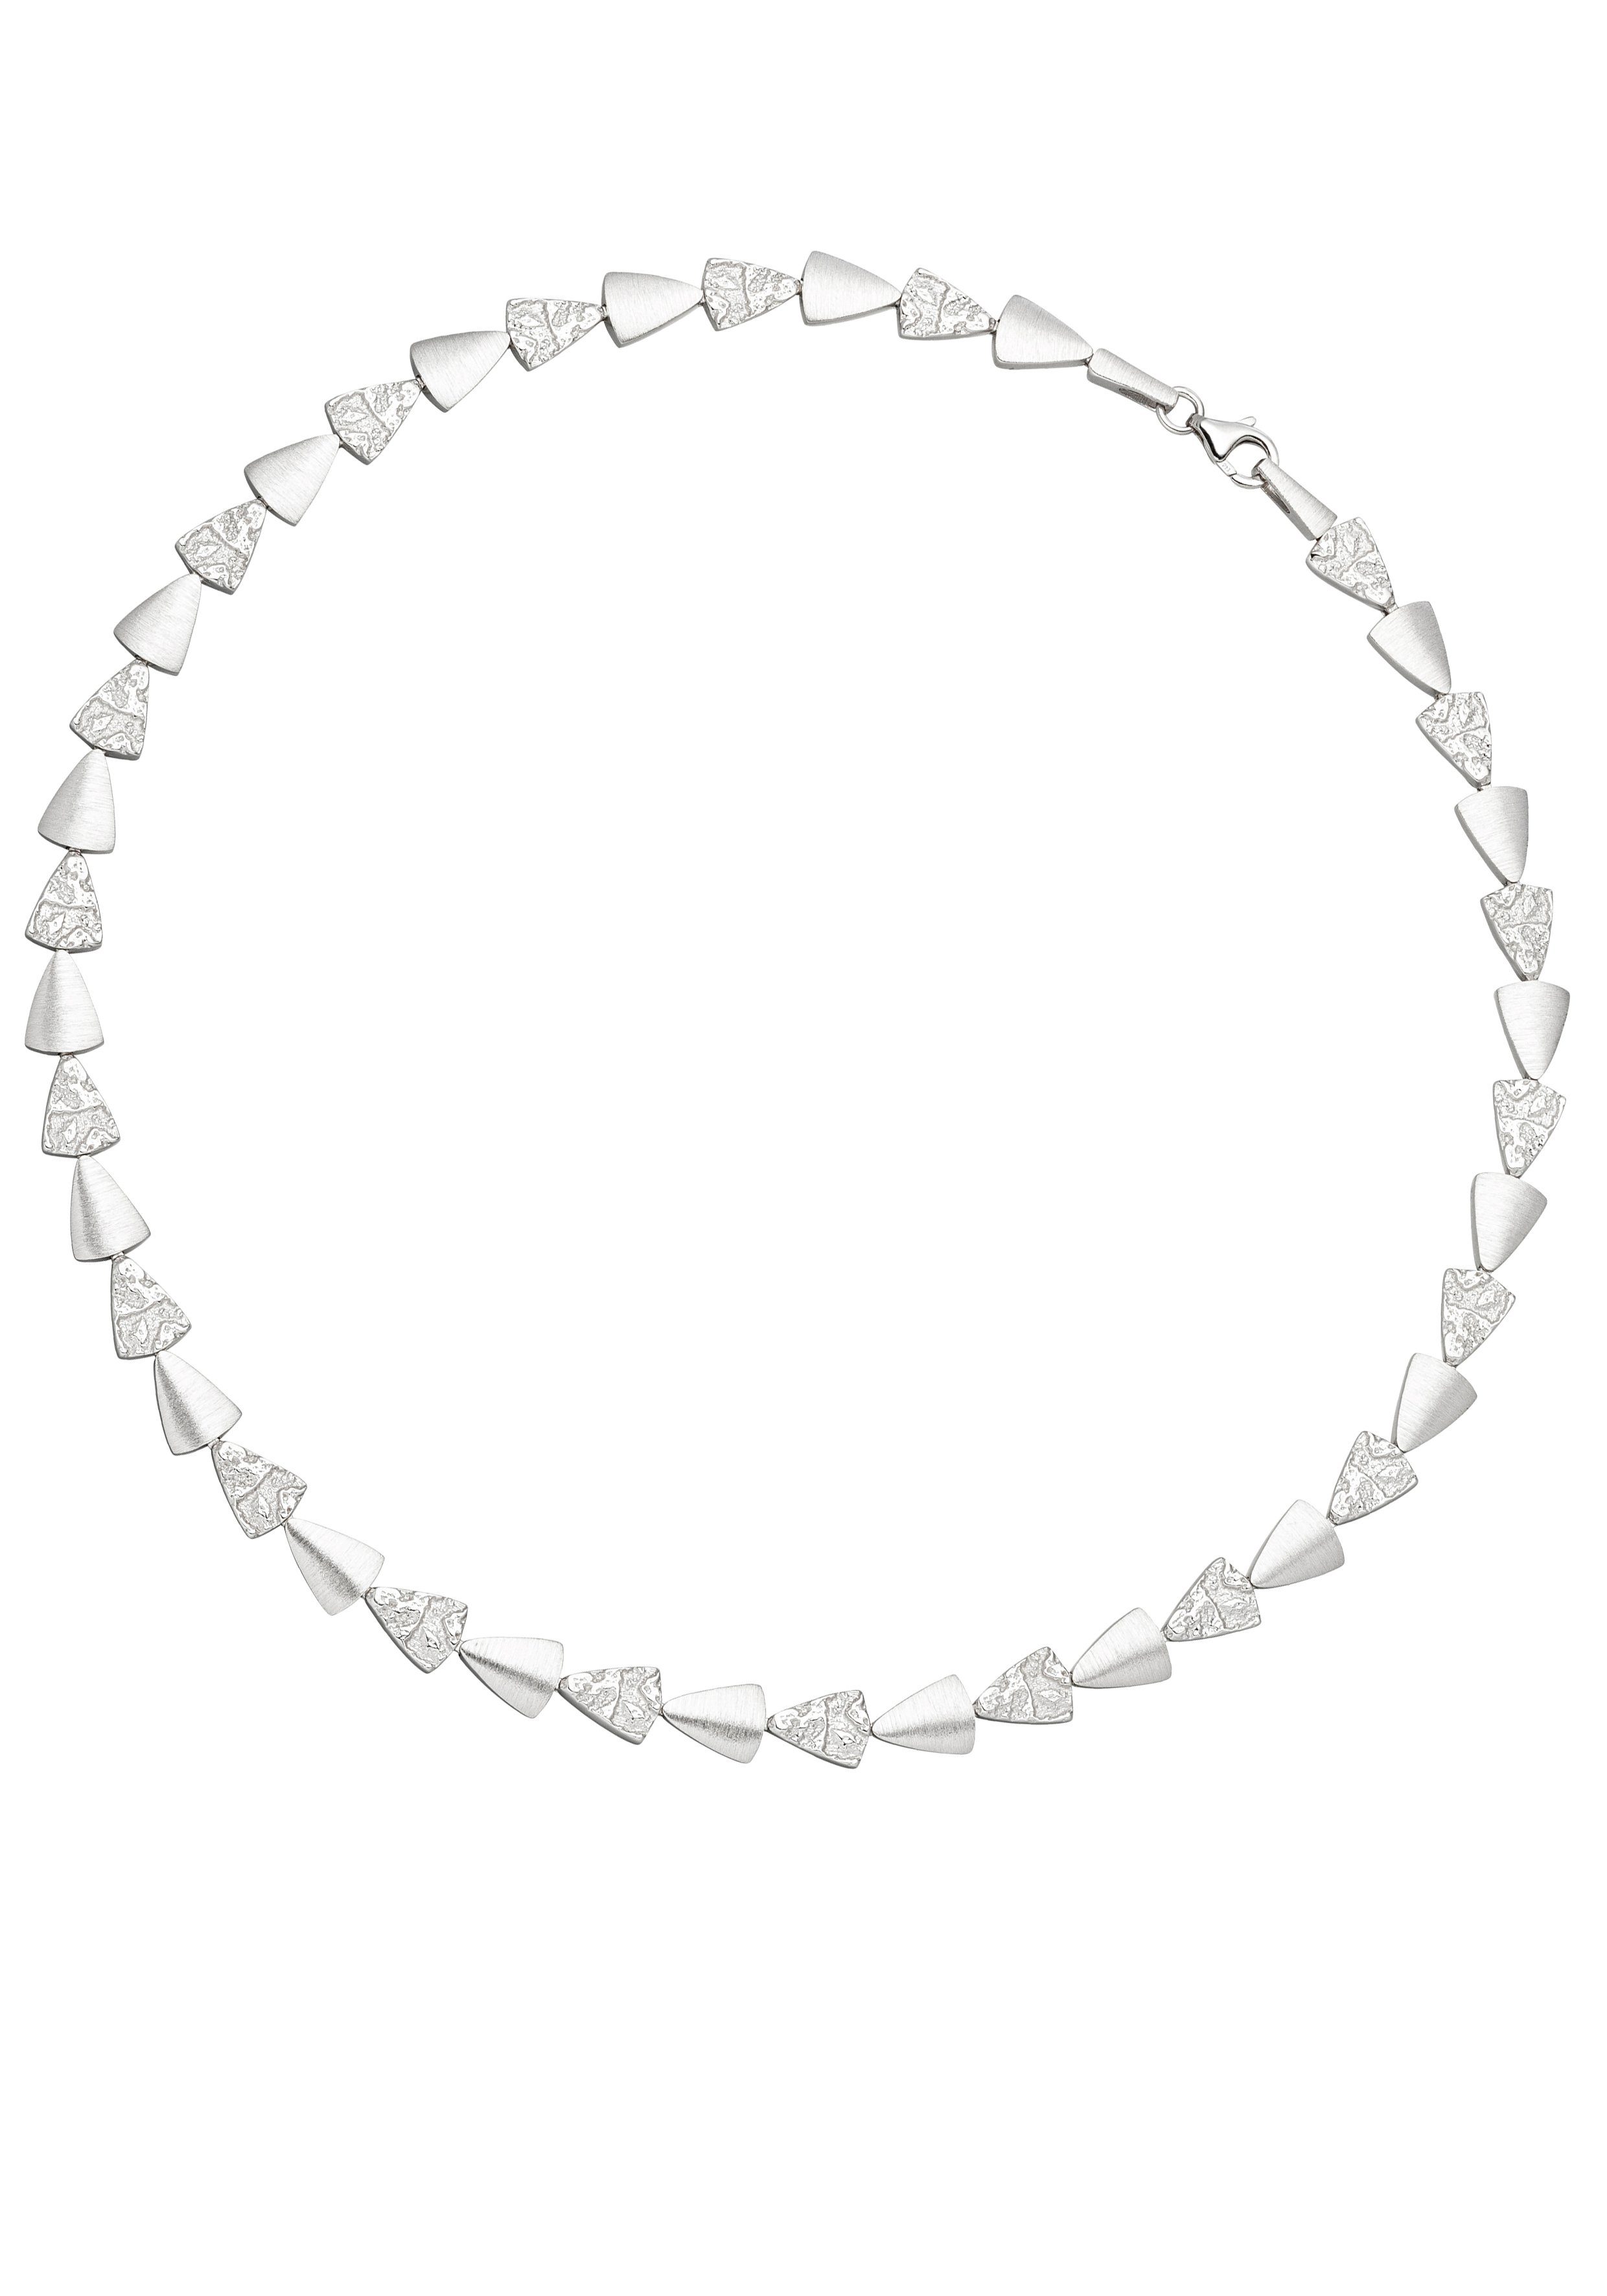 JOBO Kette ohne Anhänger Halskette mit Dreiecken, 925 Silber gehämmert 45 cm